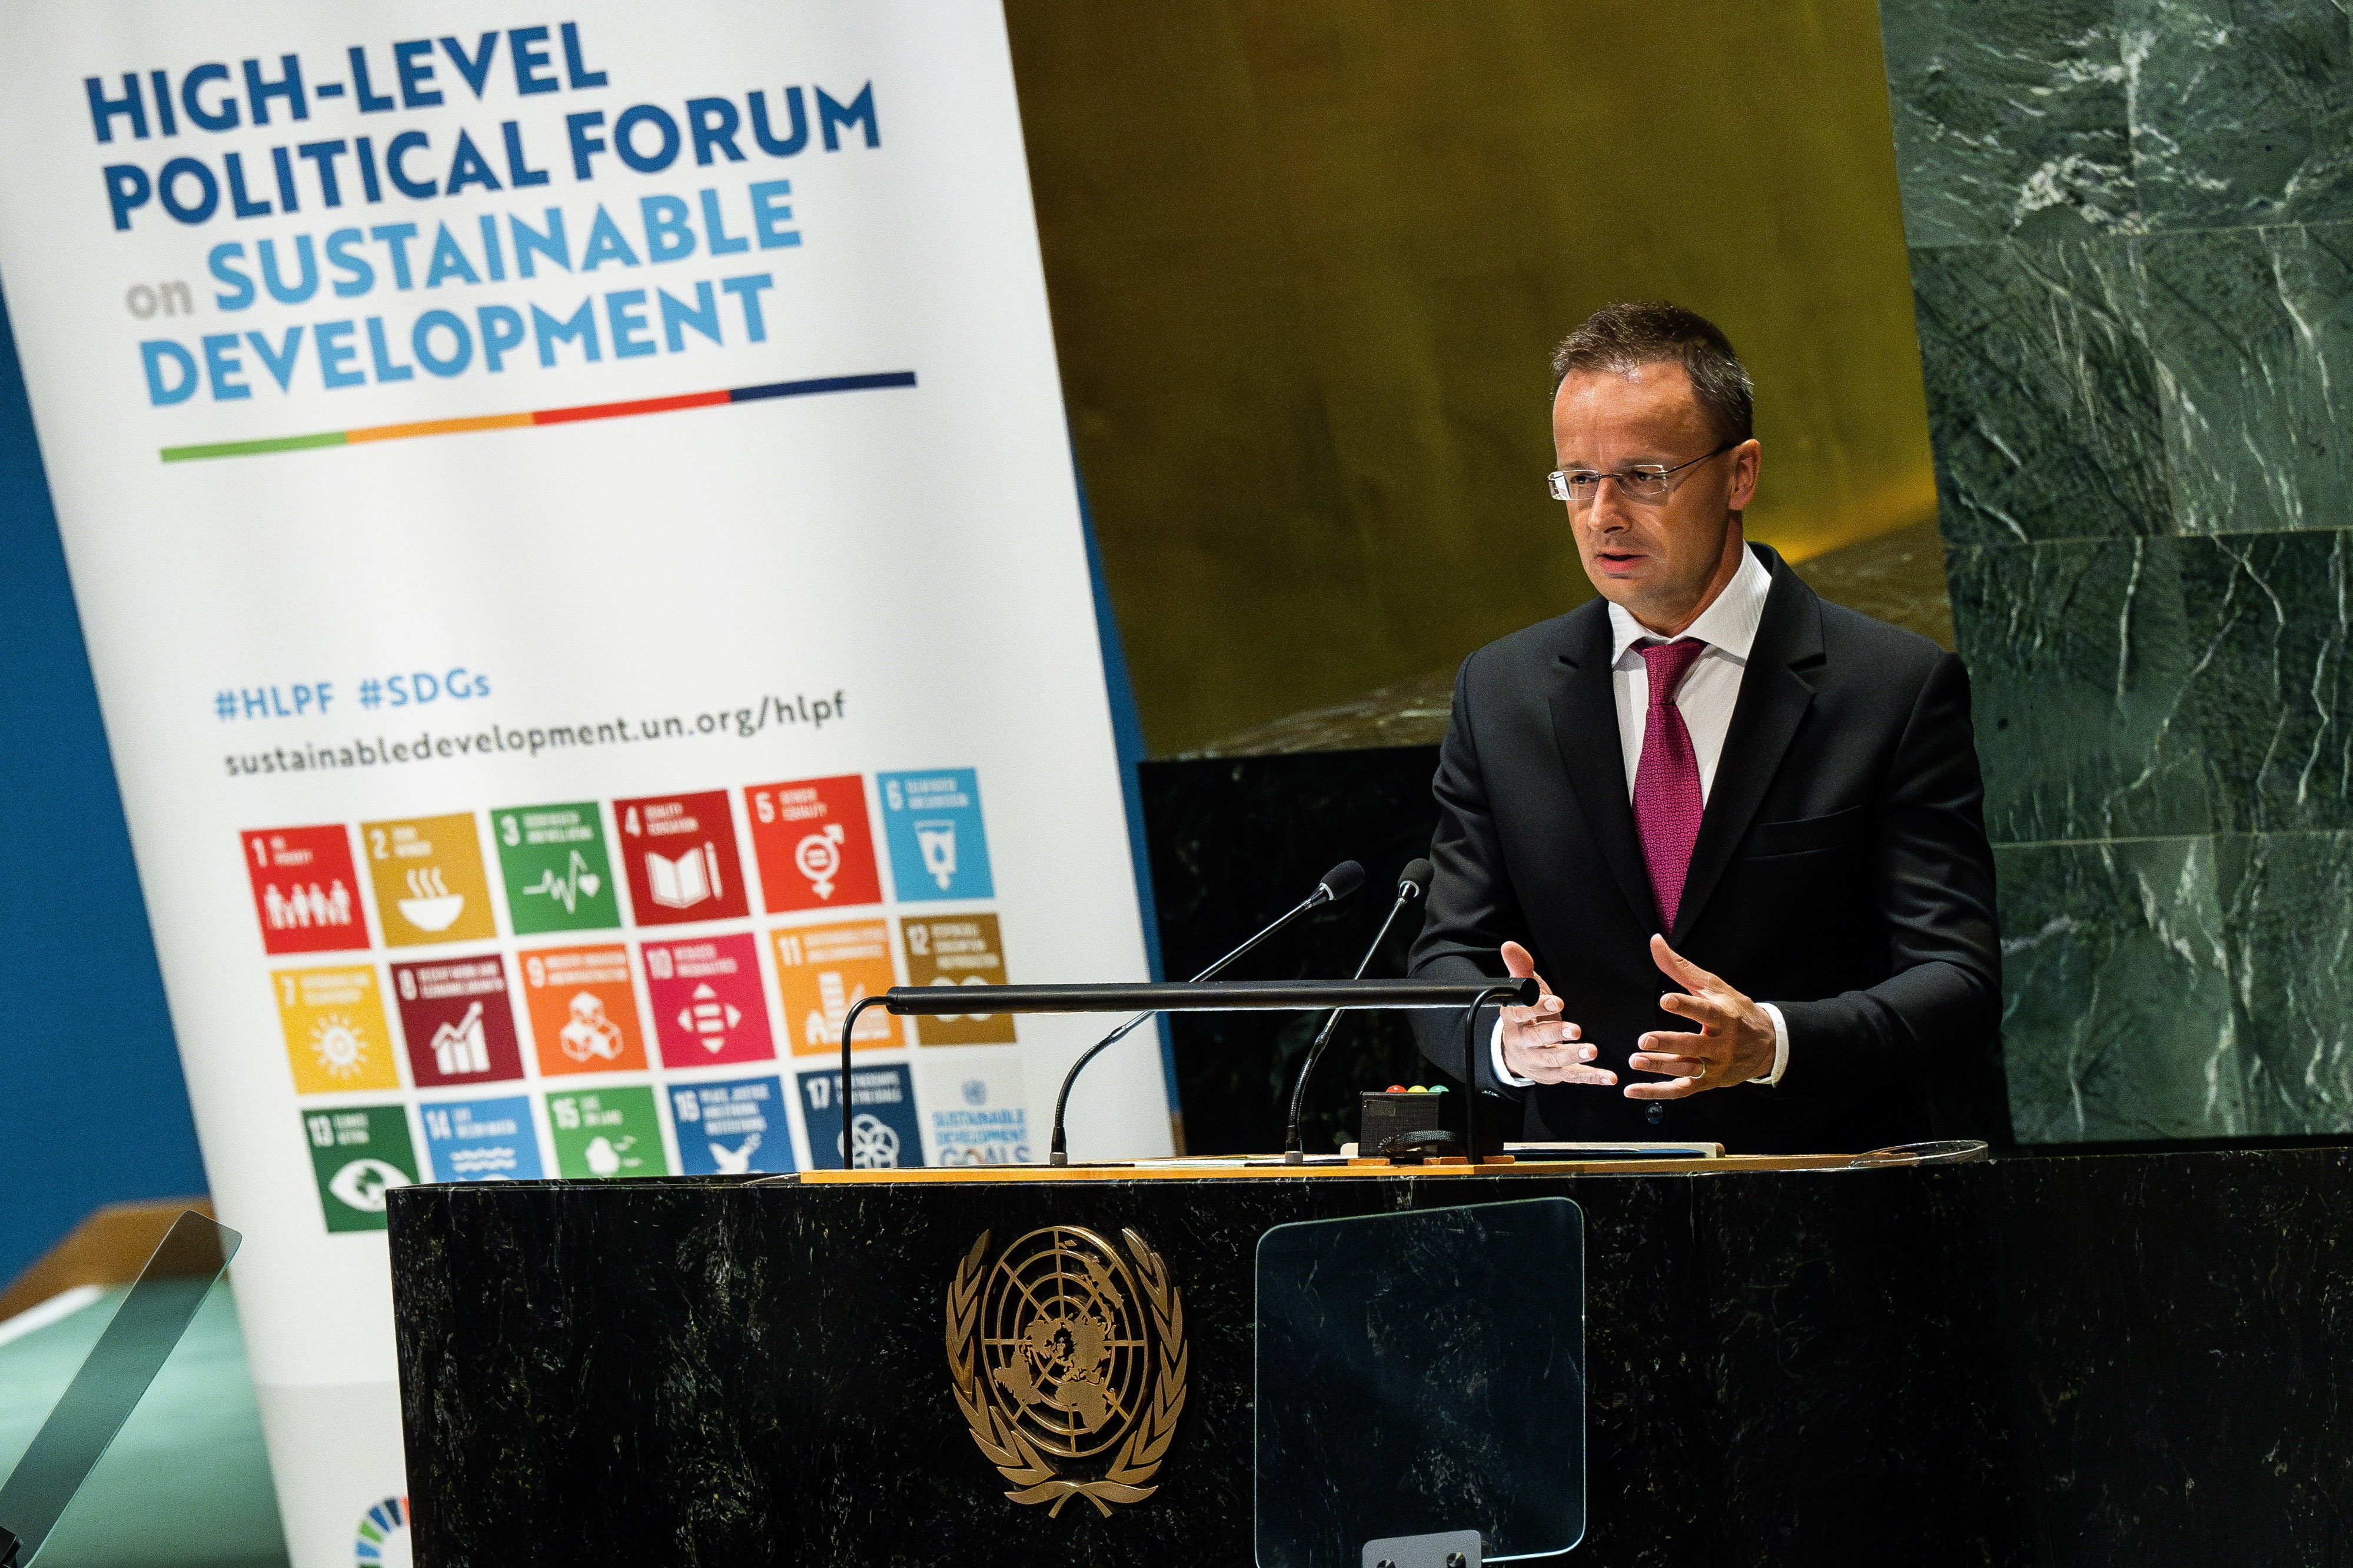 Szijjártó Addresses UN Sustainable Development Forum